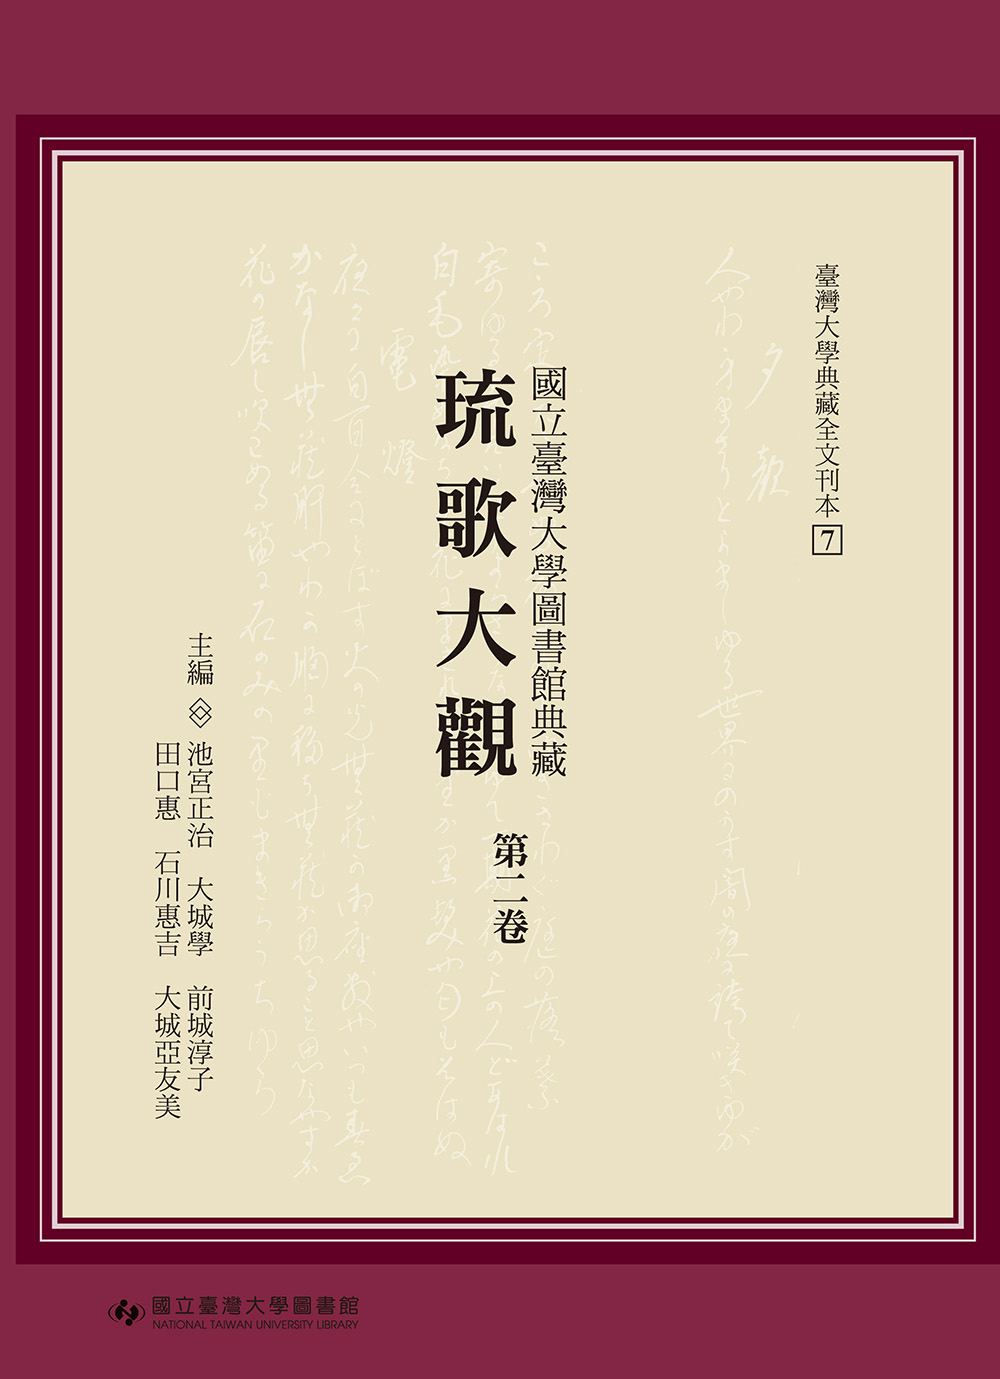 Ryukataikan: A Collection of Ryukyu Songs at National Taiwan University Library: A Transcription, Vol. 2